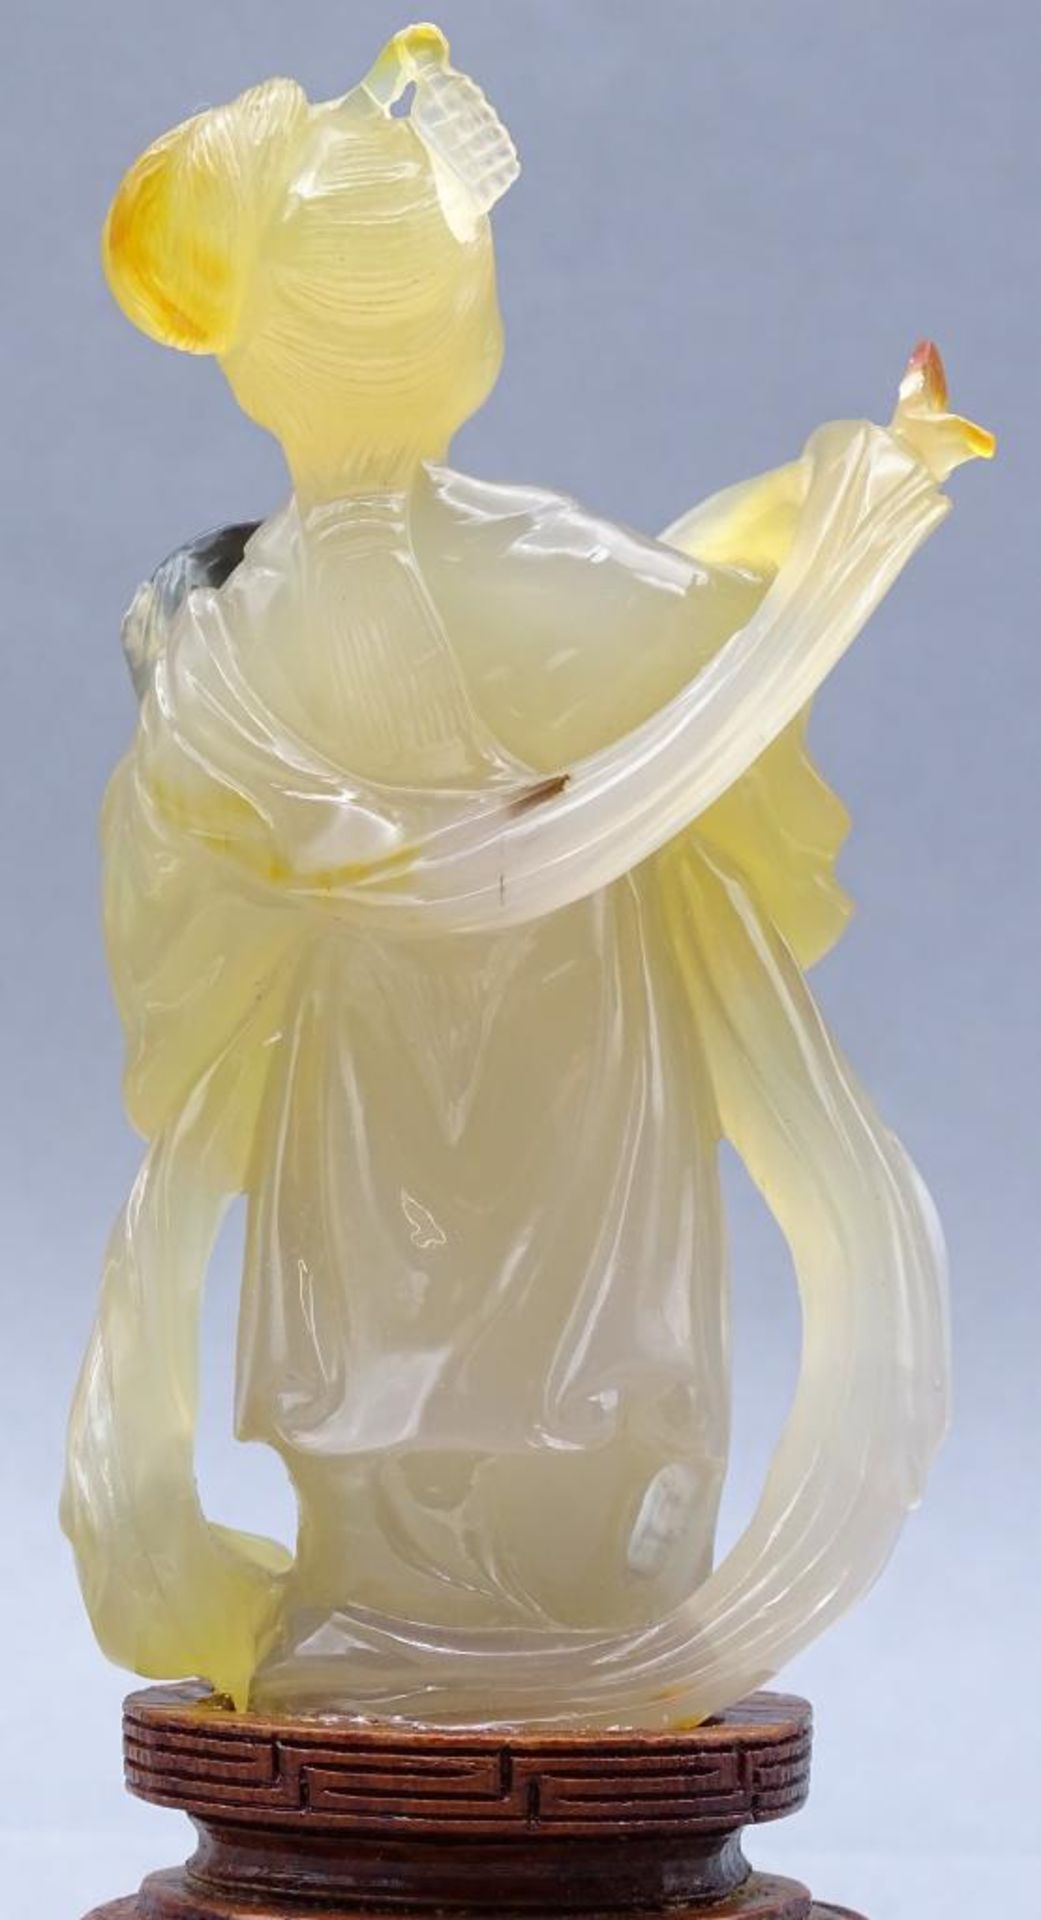 gelbe Jadeschnitzerei, Chinesin mit Fächer auf Holzsockel, China, 18/19. Jhd?, H-ca. 14 cm, rechte - Bild 5 aus 10